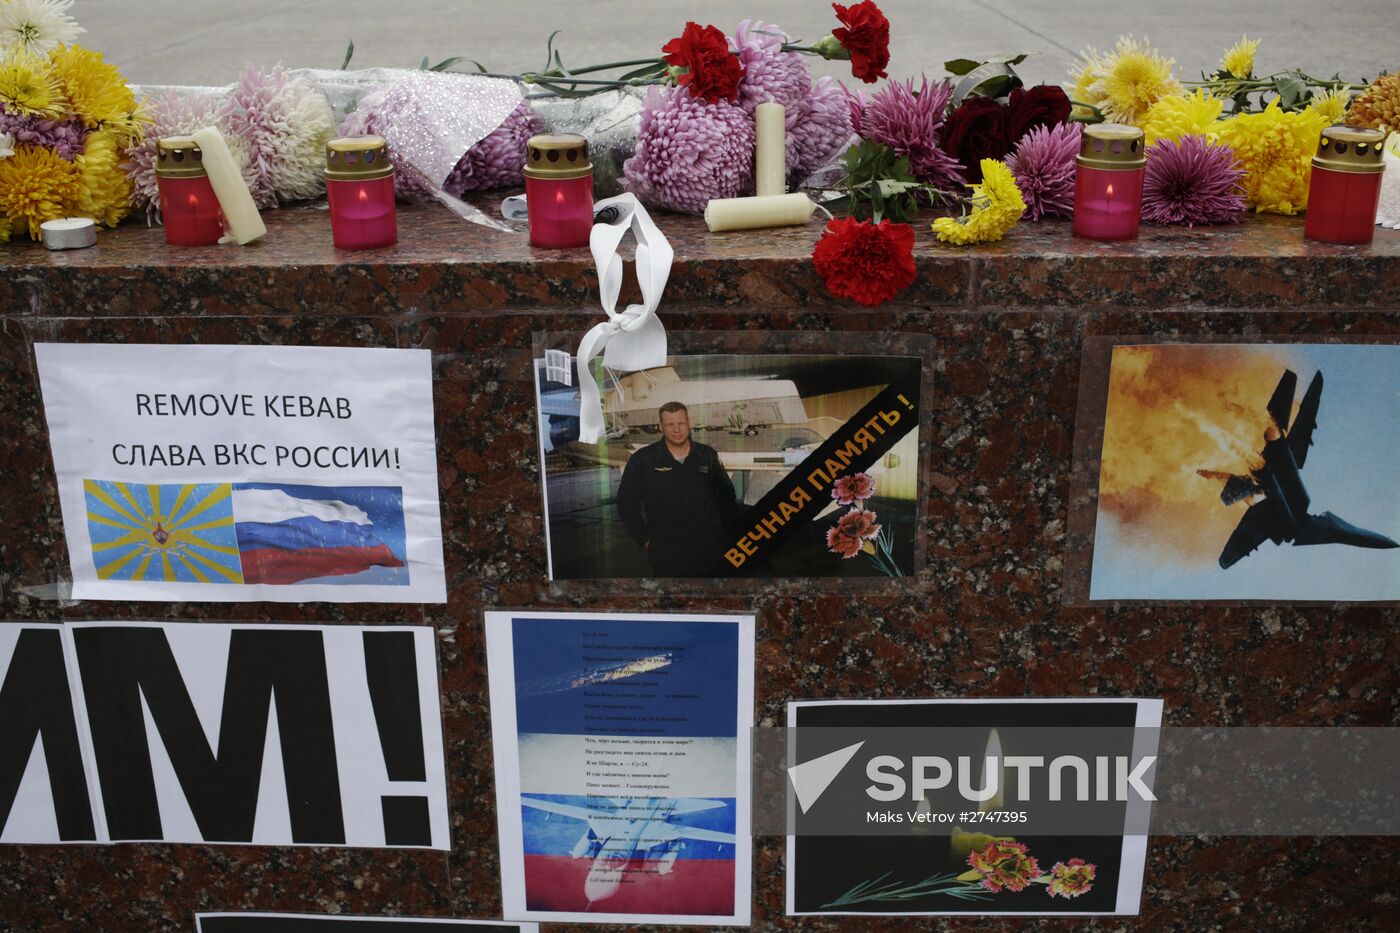 Memorial rally for killed Su-24 pilot Oleg Peshkov in Simferopol